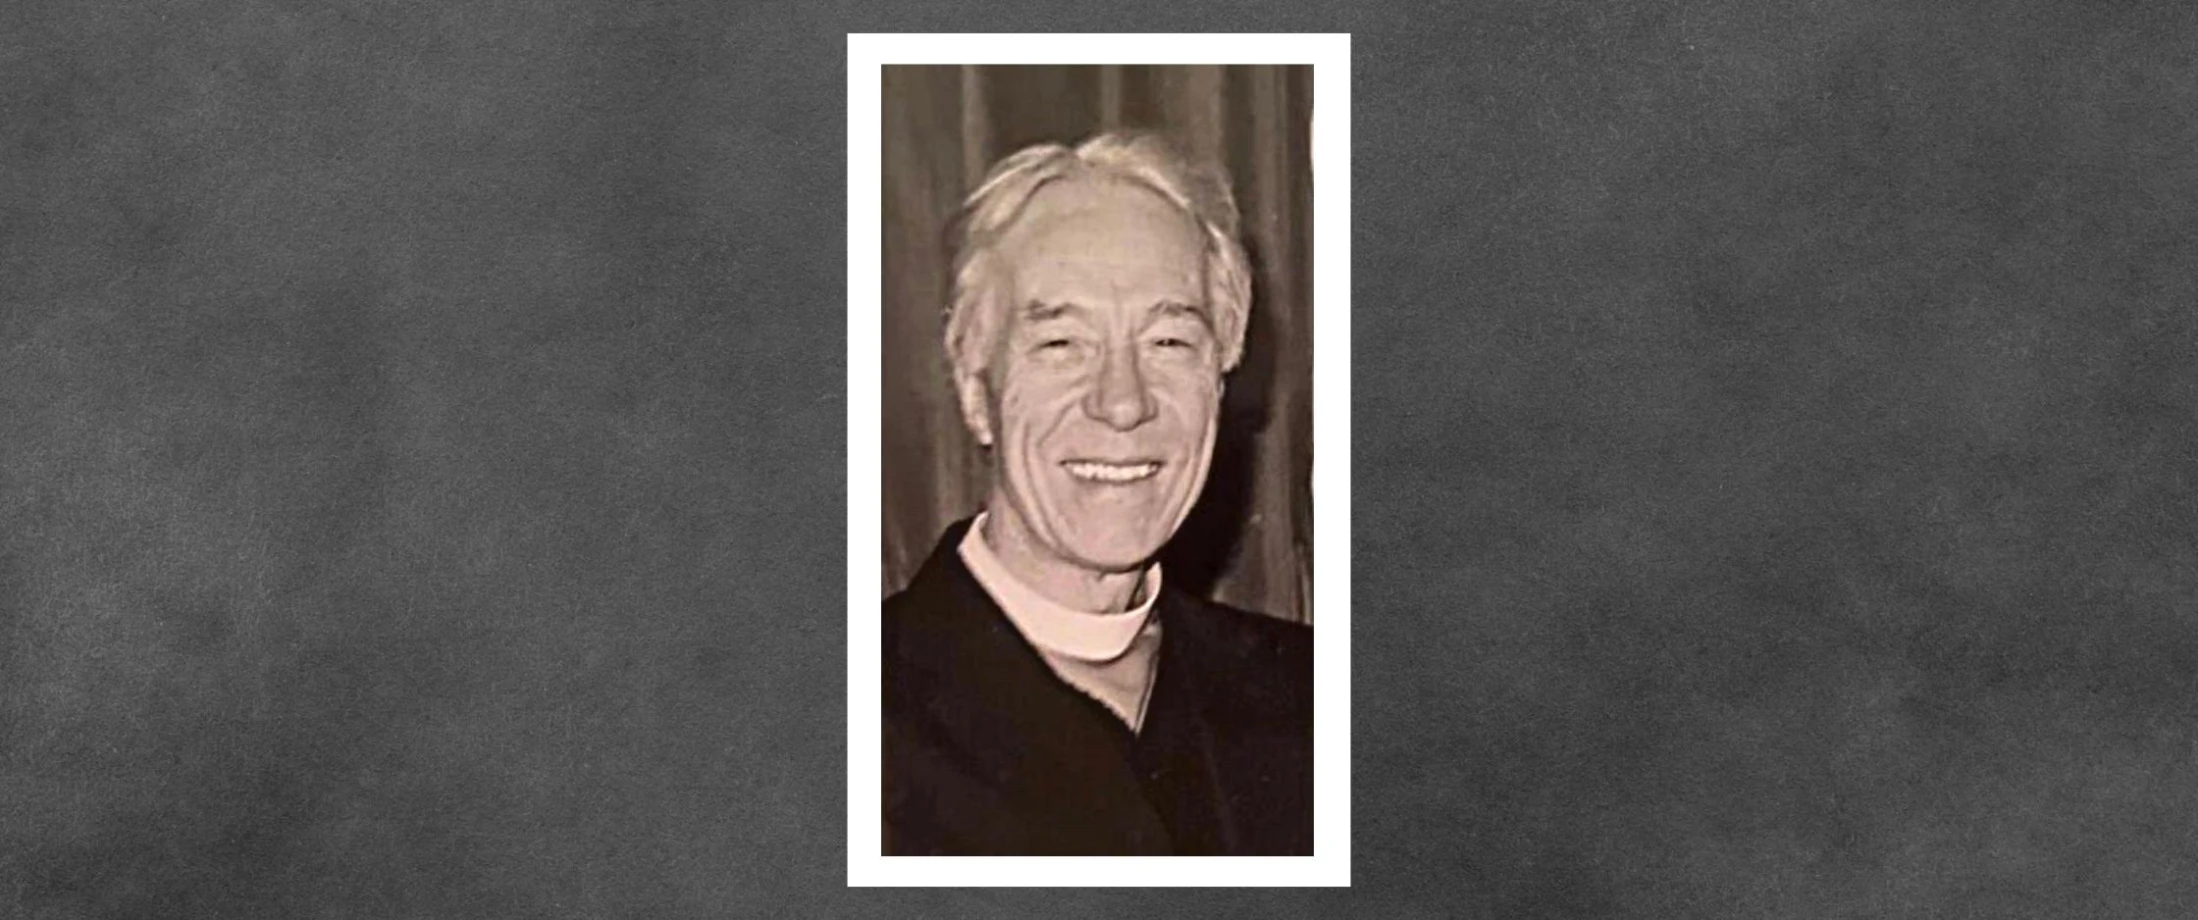 Dean Mervyn Wilson “loved and served the Good Shepherd”